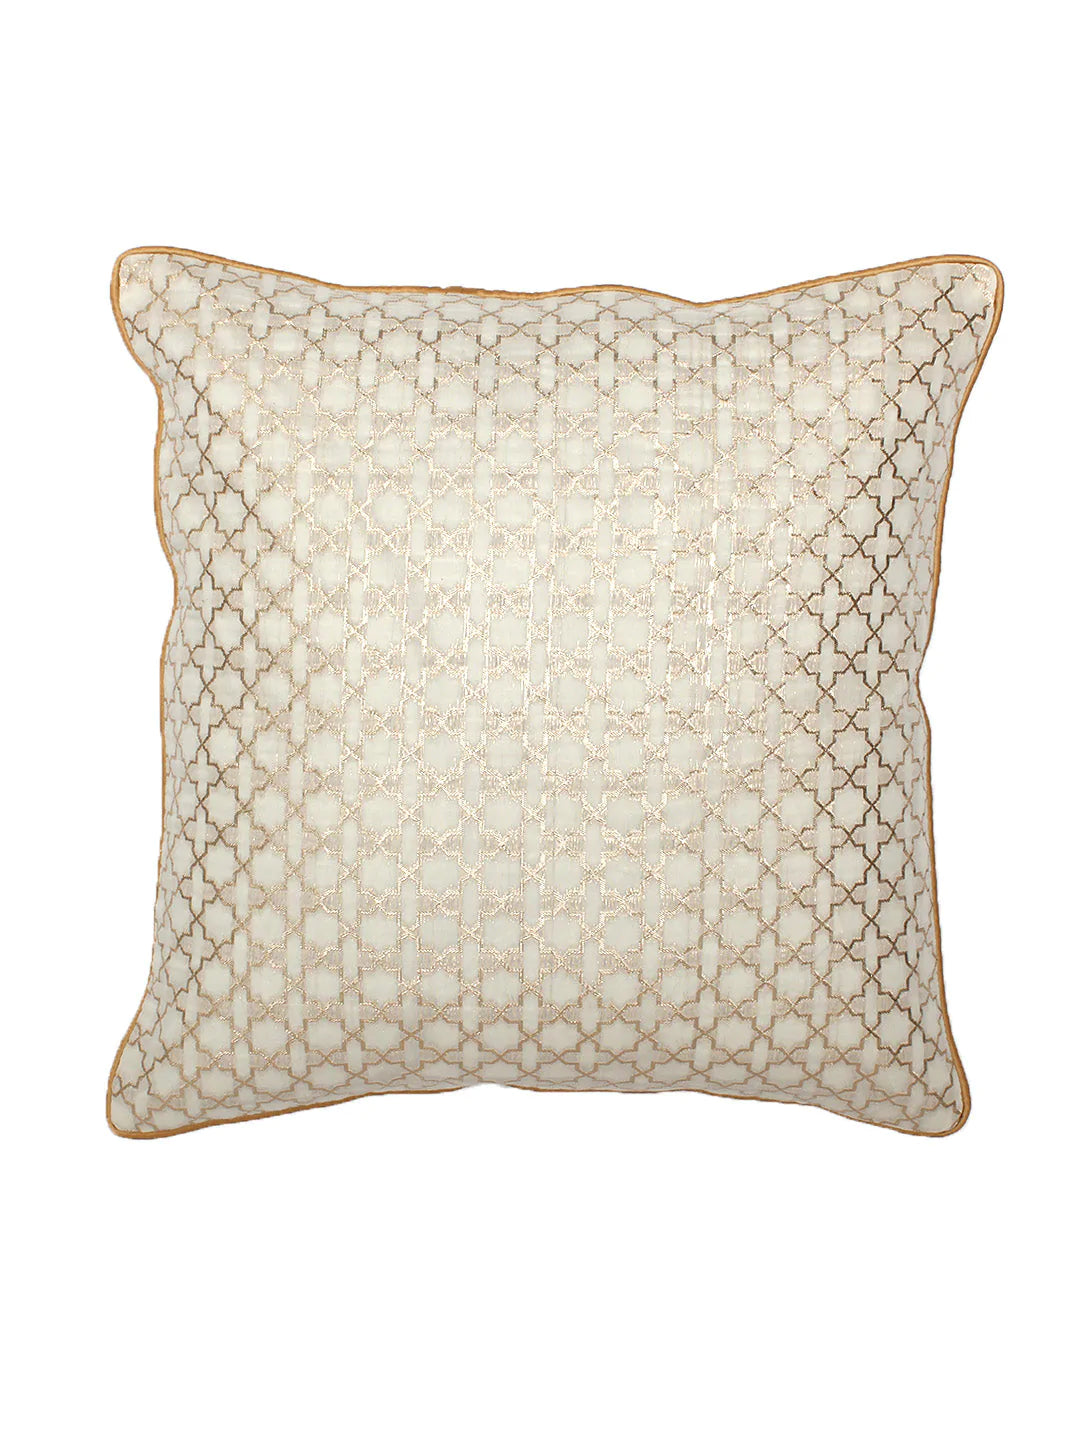 Chaupad Cushion Cover (White Gold)